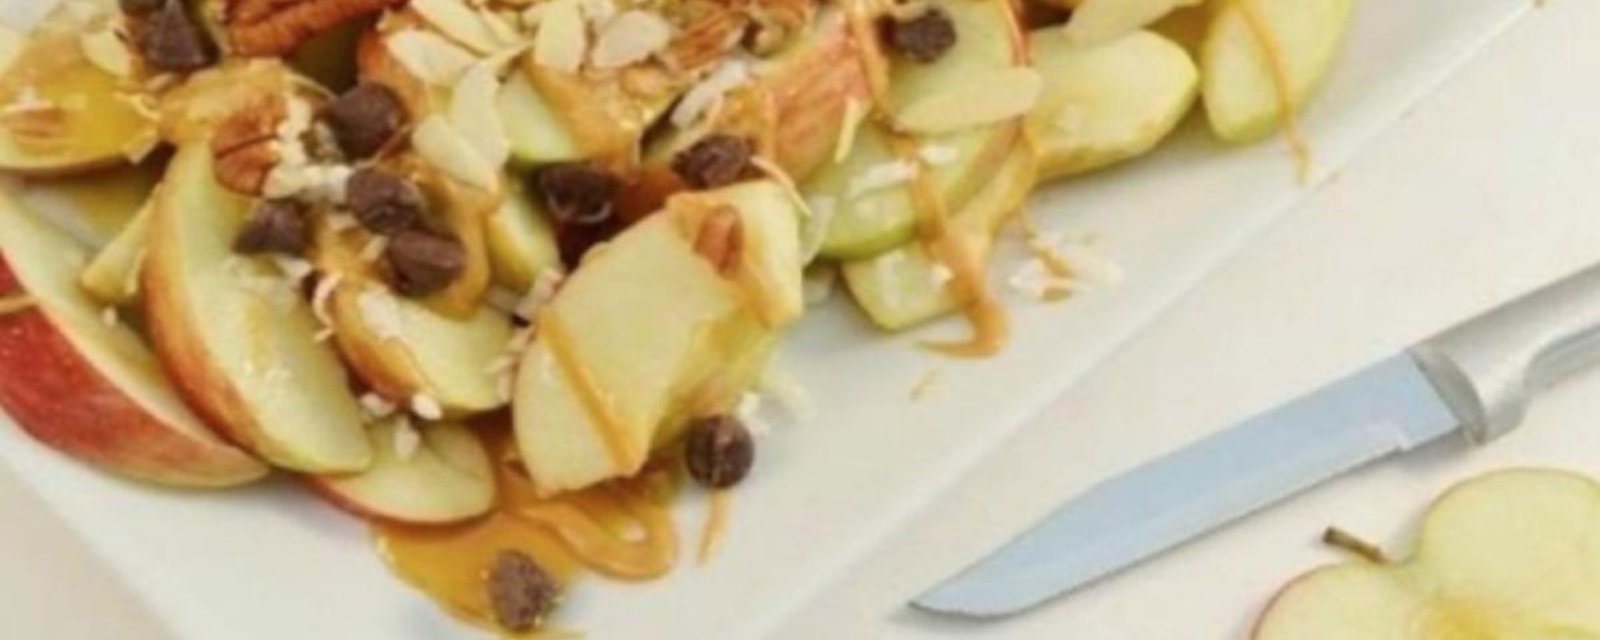 9 façons de mettre en vedette les pommes cet automne avec des recettes toutes simples! 